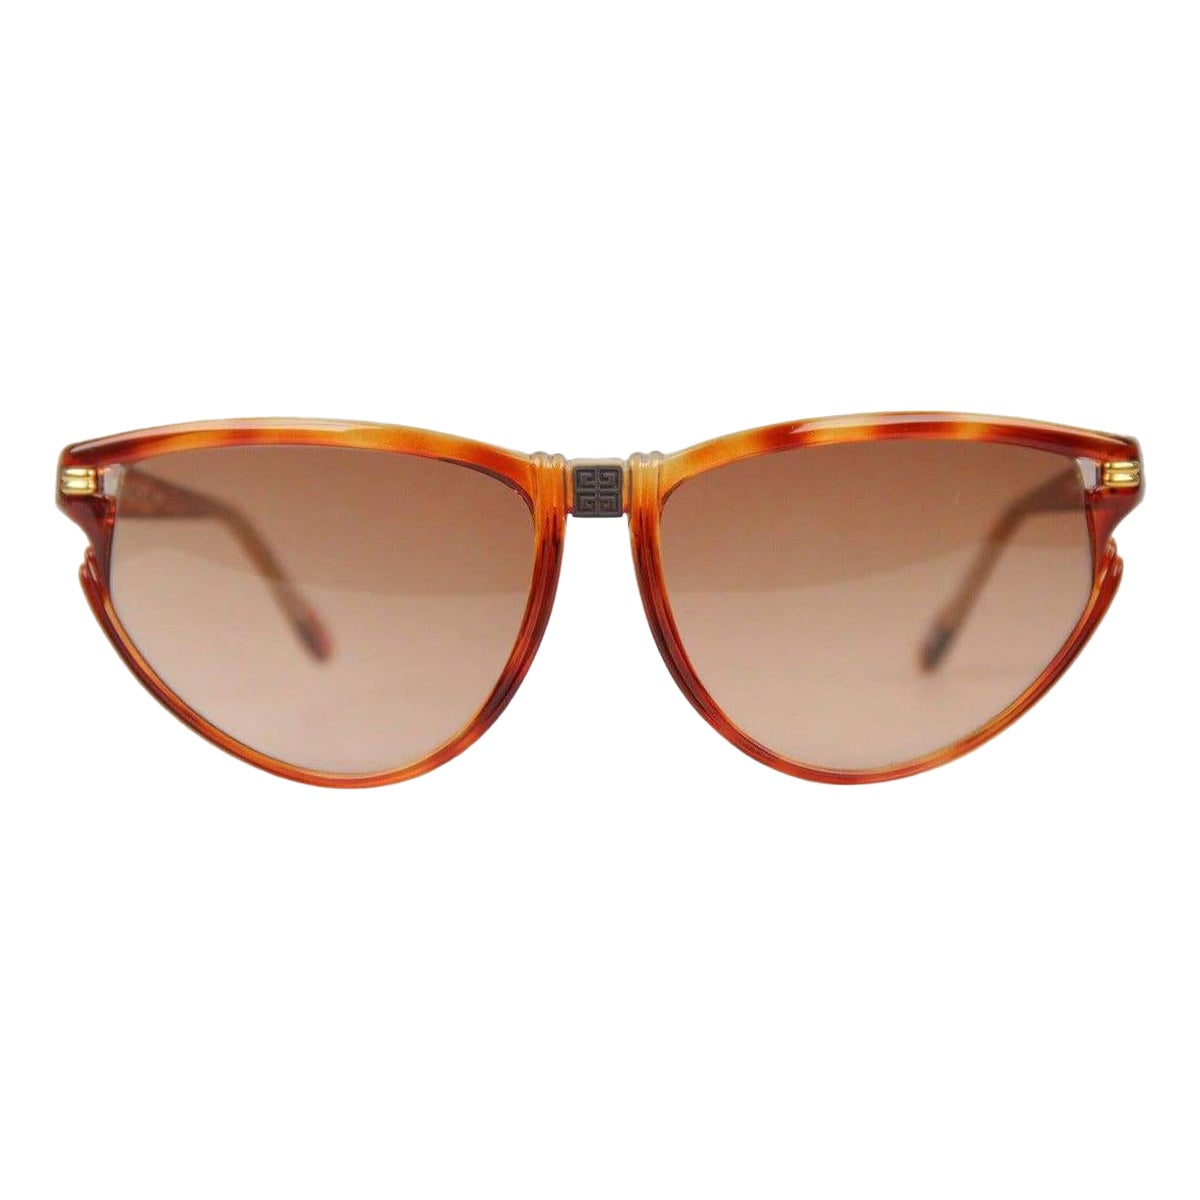 Givenchy Paris Vintage Brown Women Sunglasses mod SG01 COL 02 For Sale